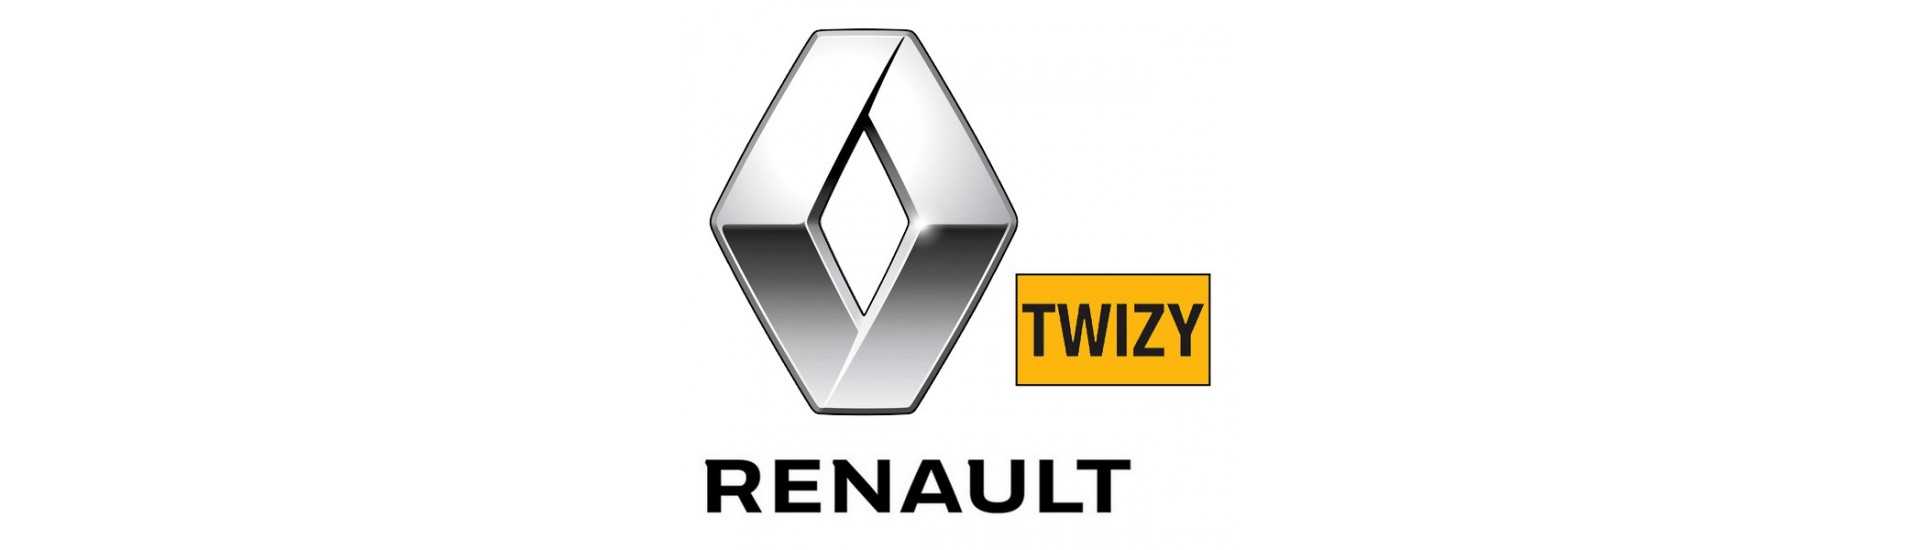 Berceau moteur au meilleur prix pour voiture sans permis Renault Twizy